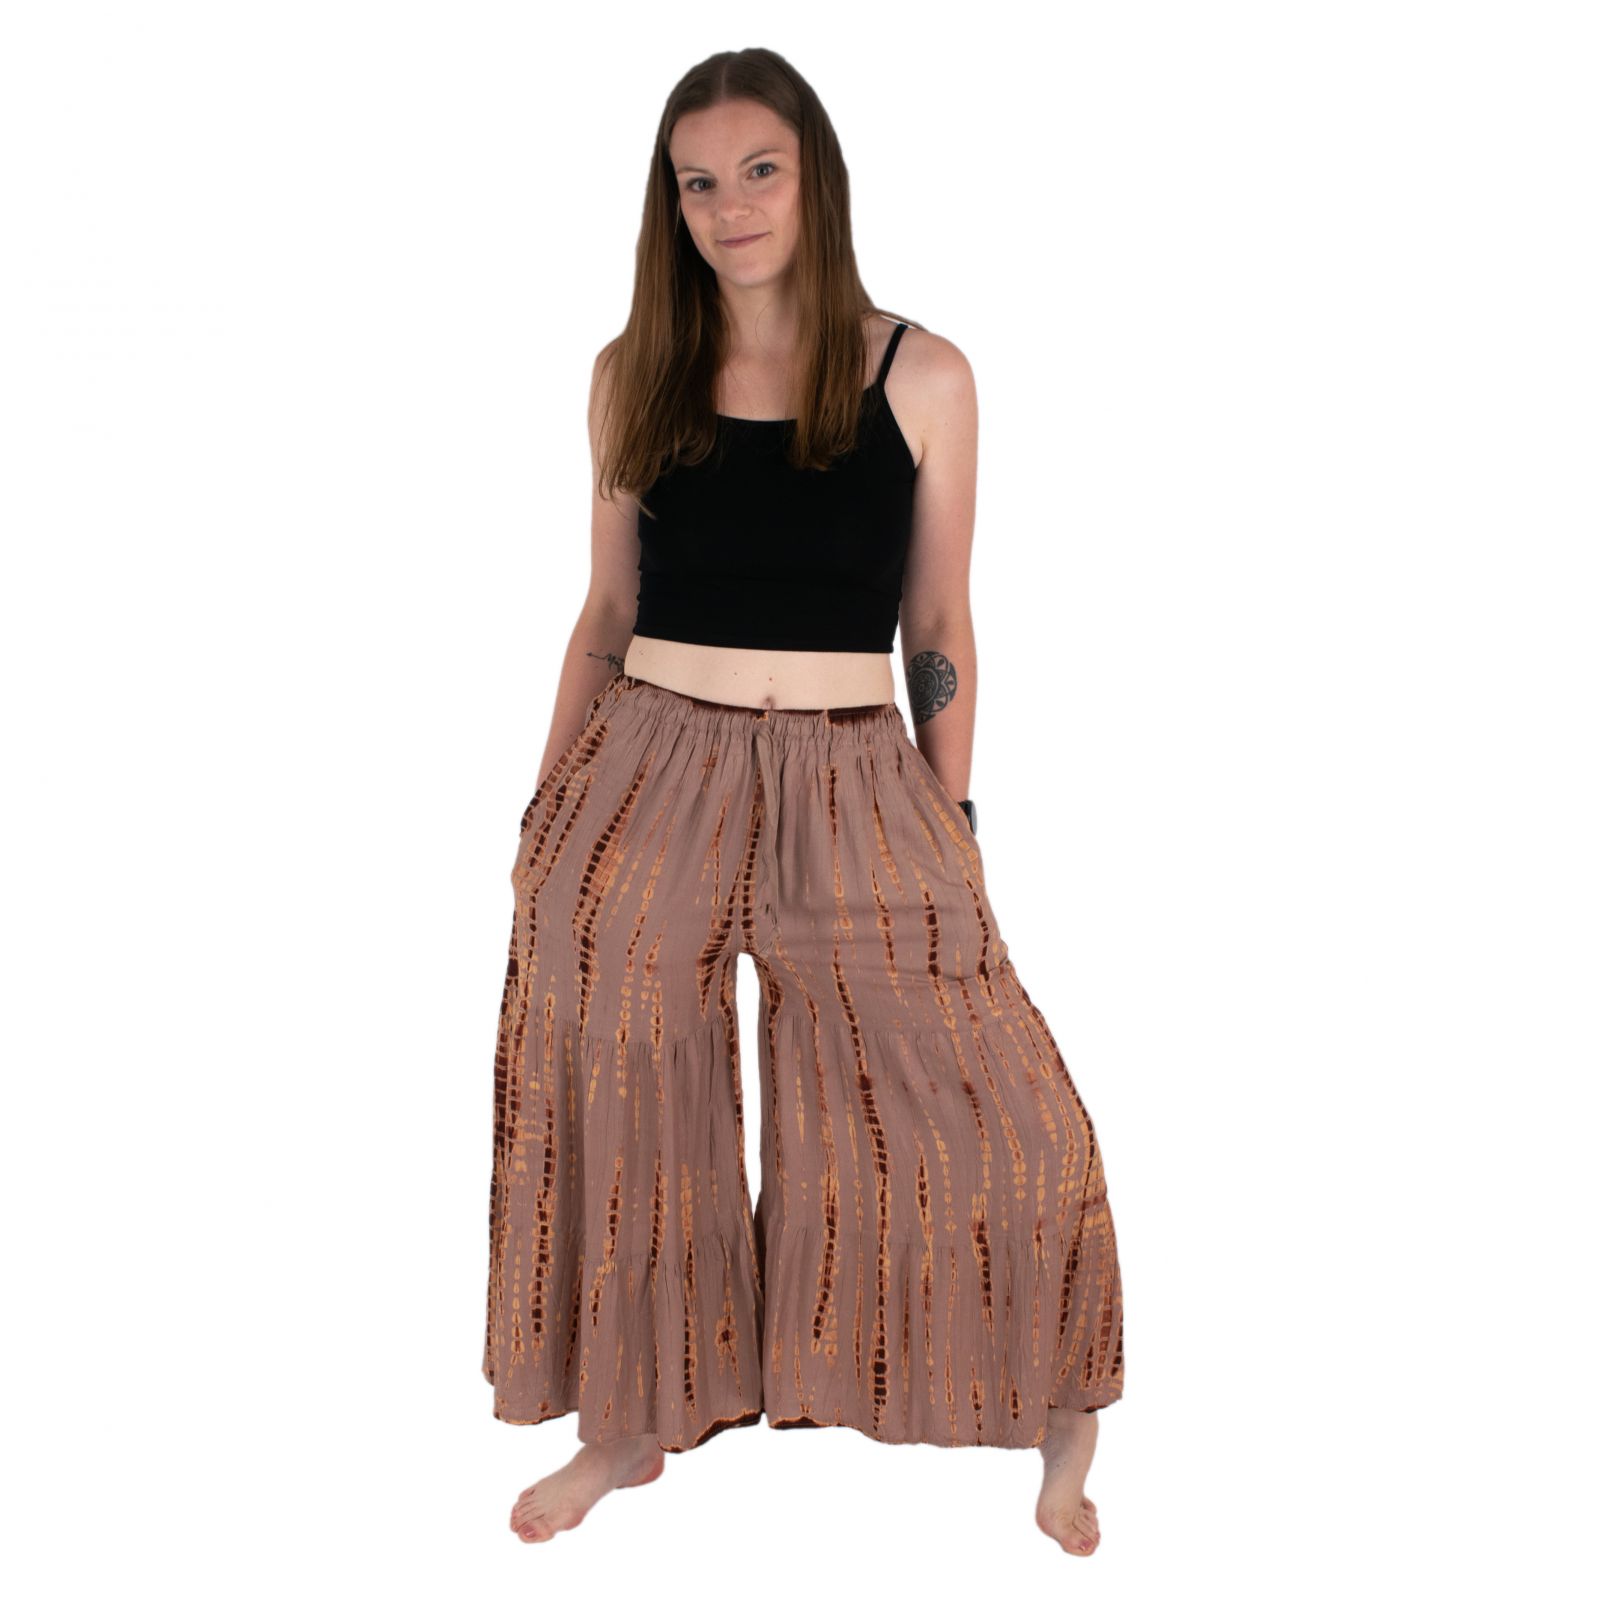 Batikované sukňové nohavice Yana Greyish-Brown Thailand